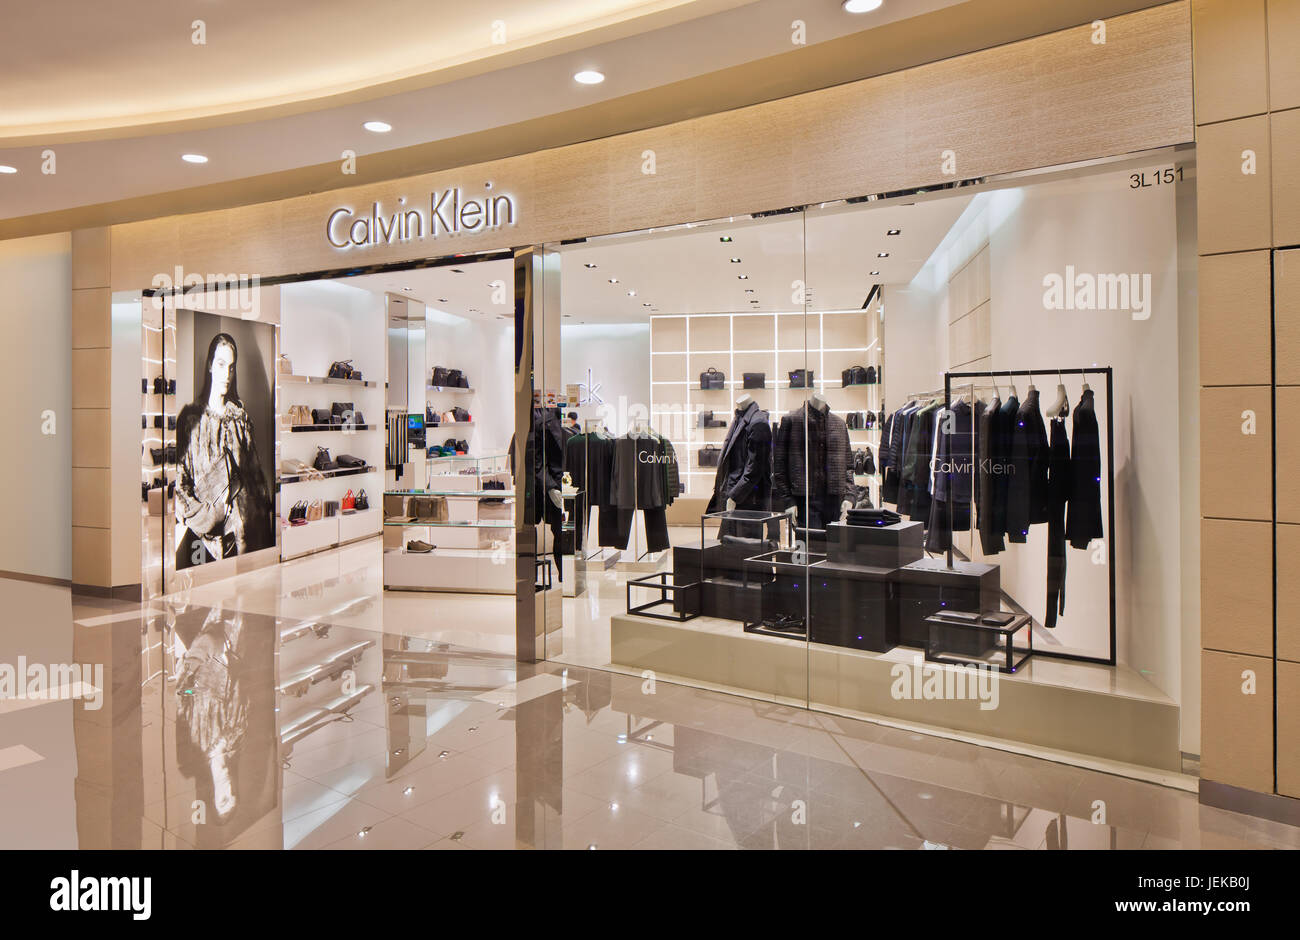 Calvin Klein Outlet Store In Florida, USA Stock Photo Alamy | Calvin Klein  Factory Outlet Store 